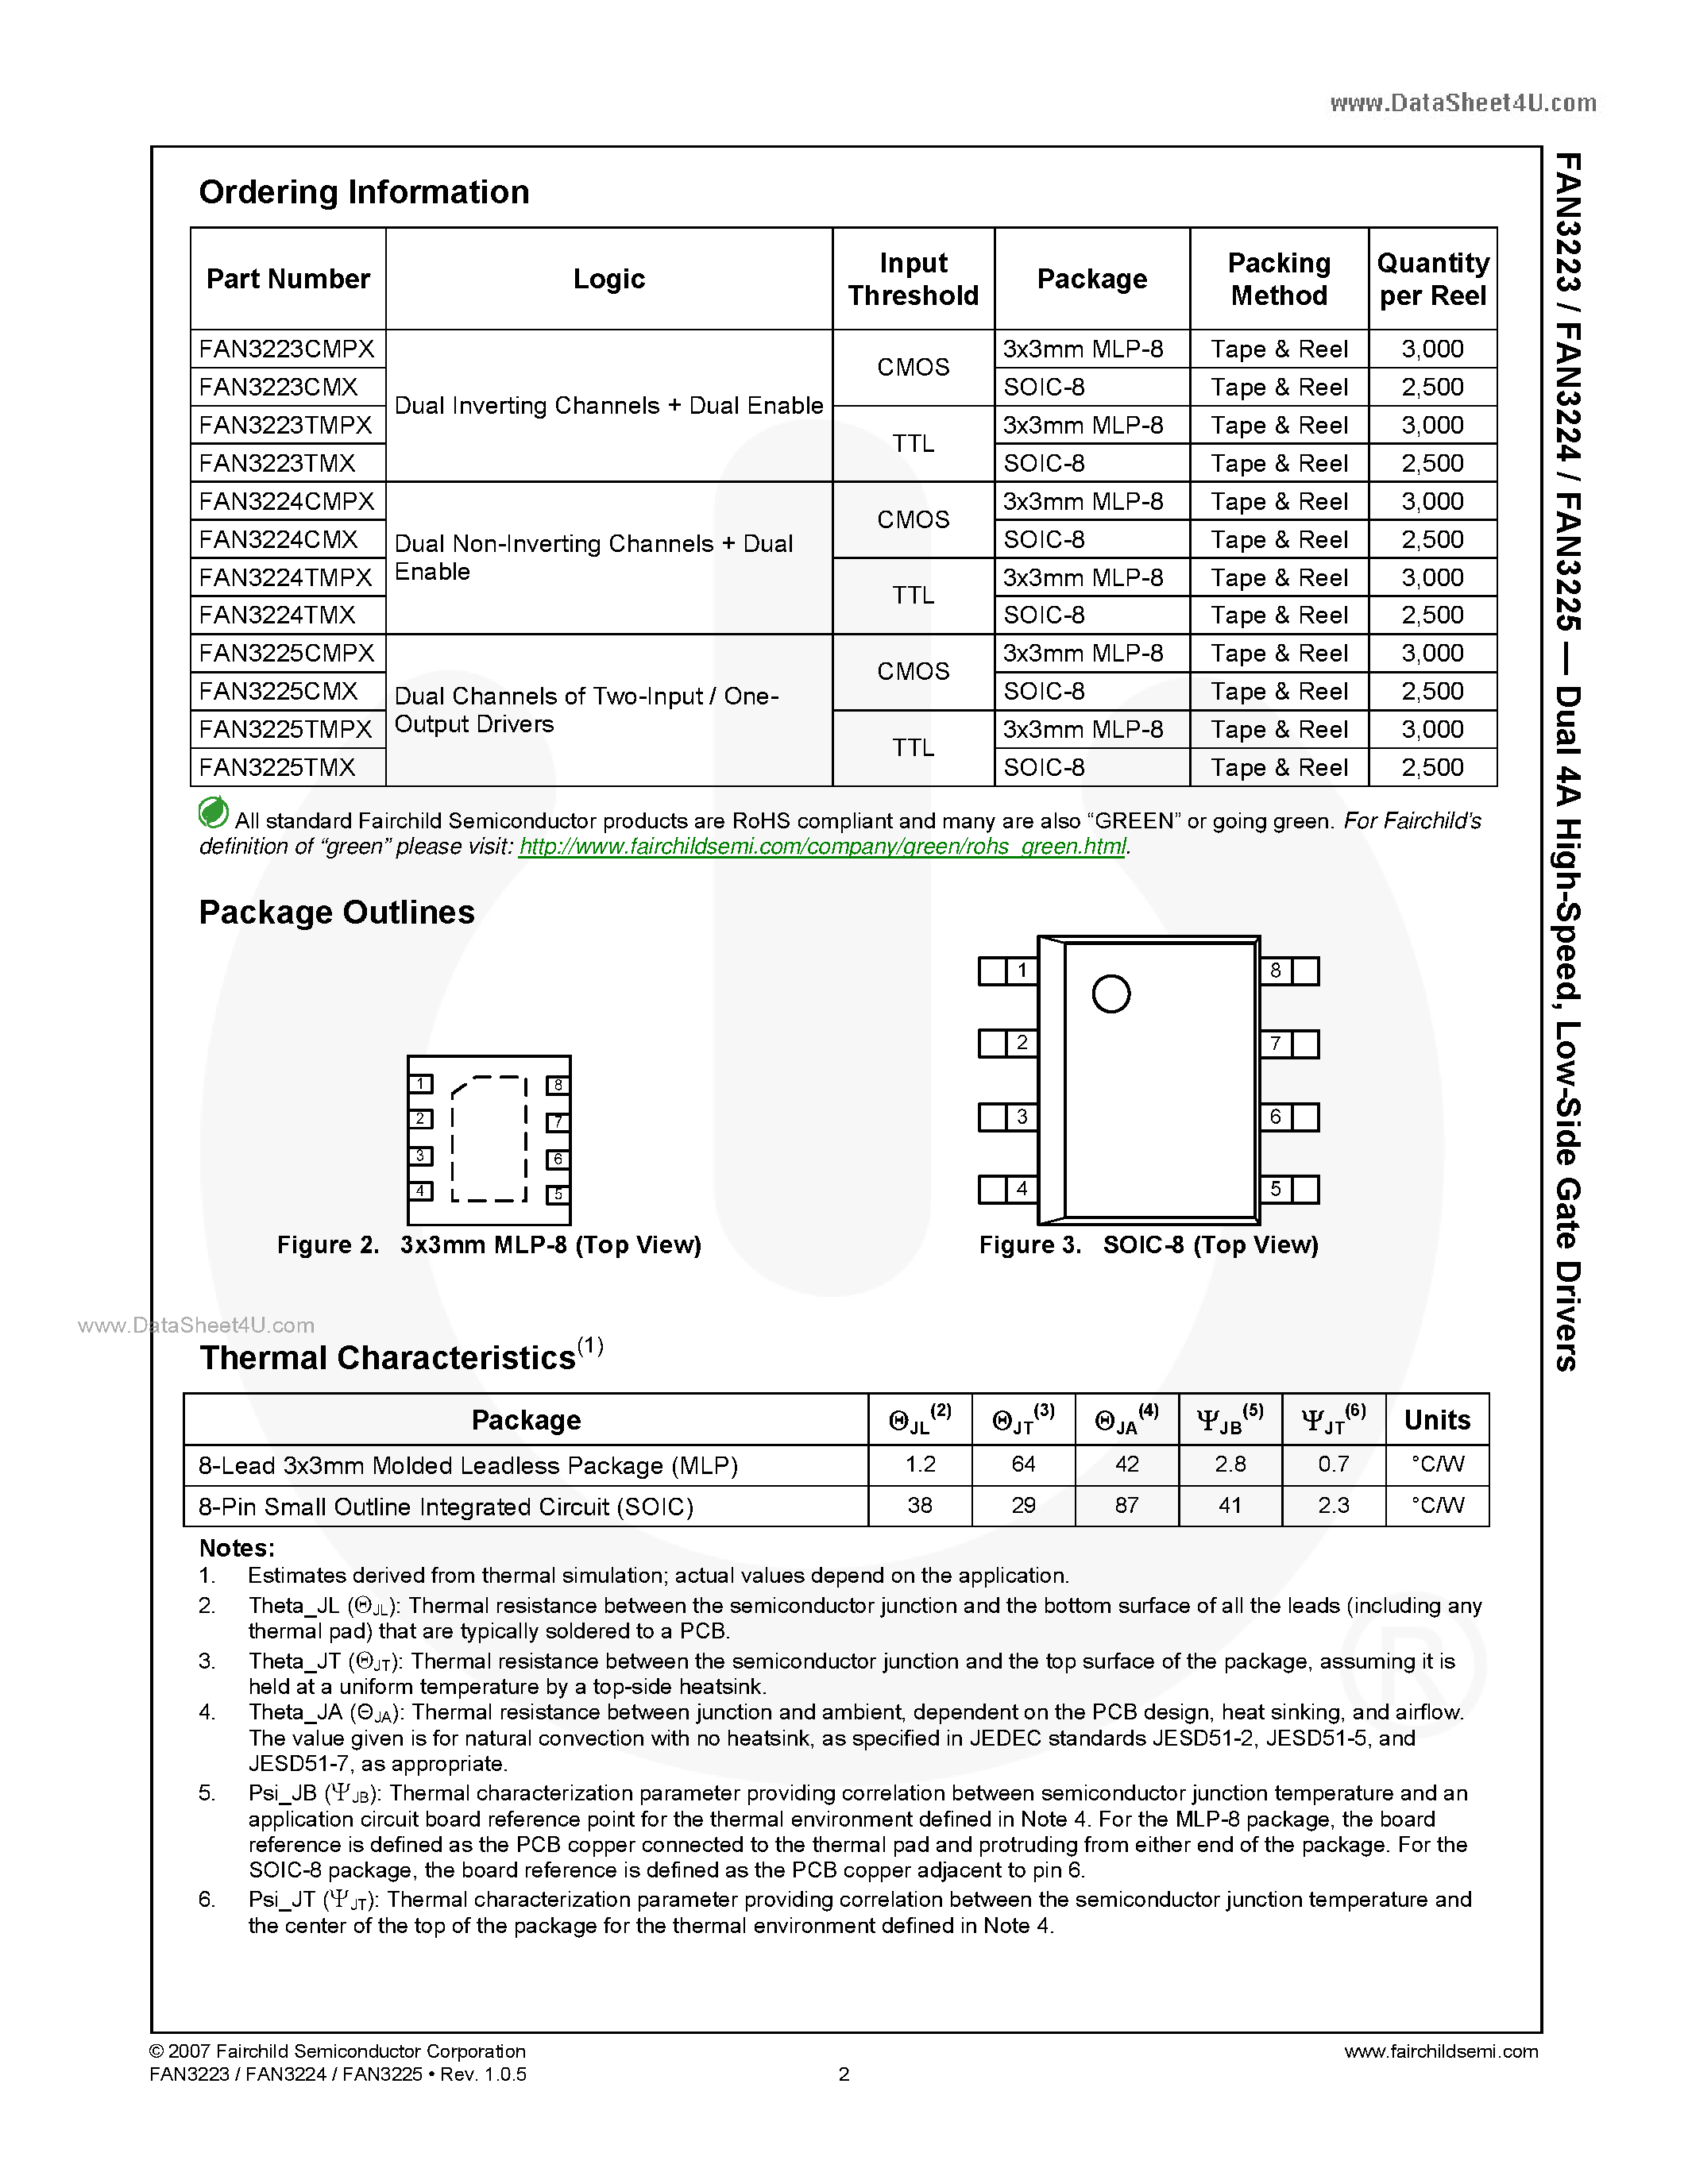 Даташит FAN3223 - (FAN3223 - FAN3225) Low-Side Gate Drivers страница 2